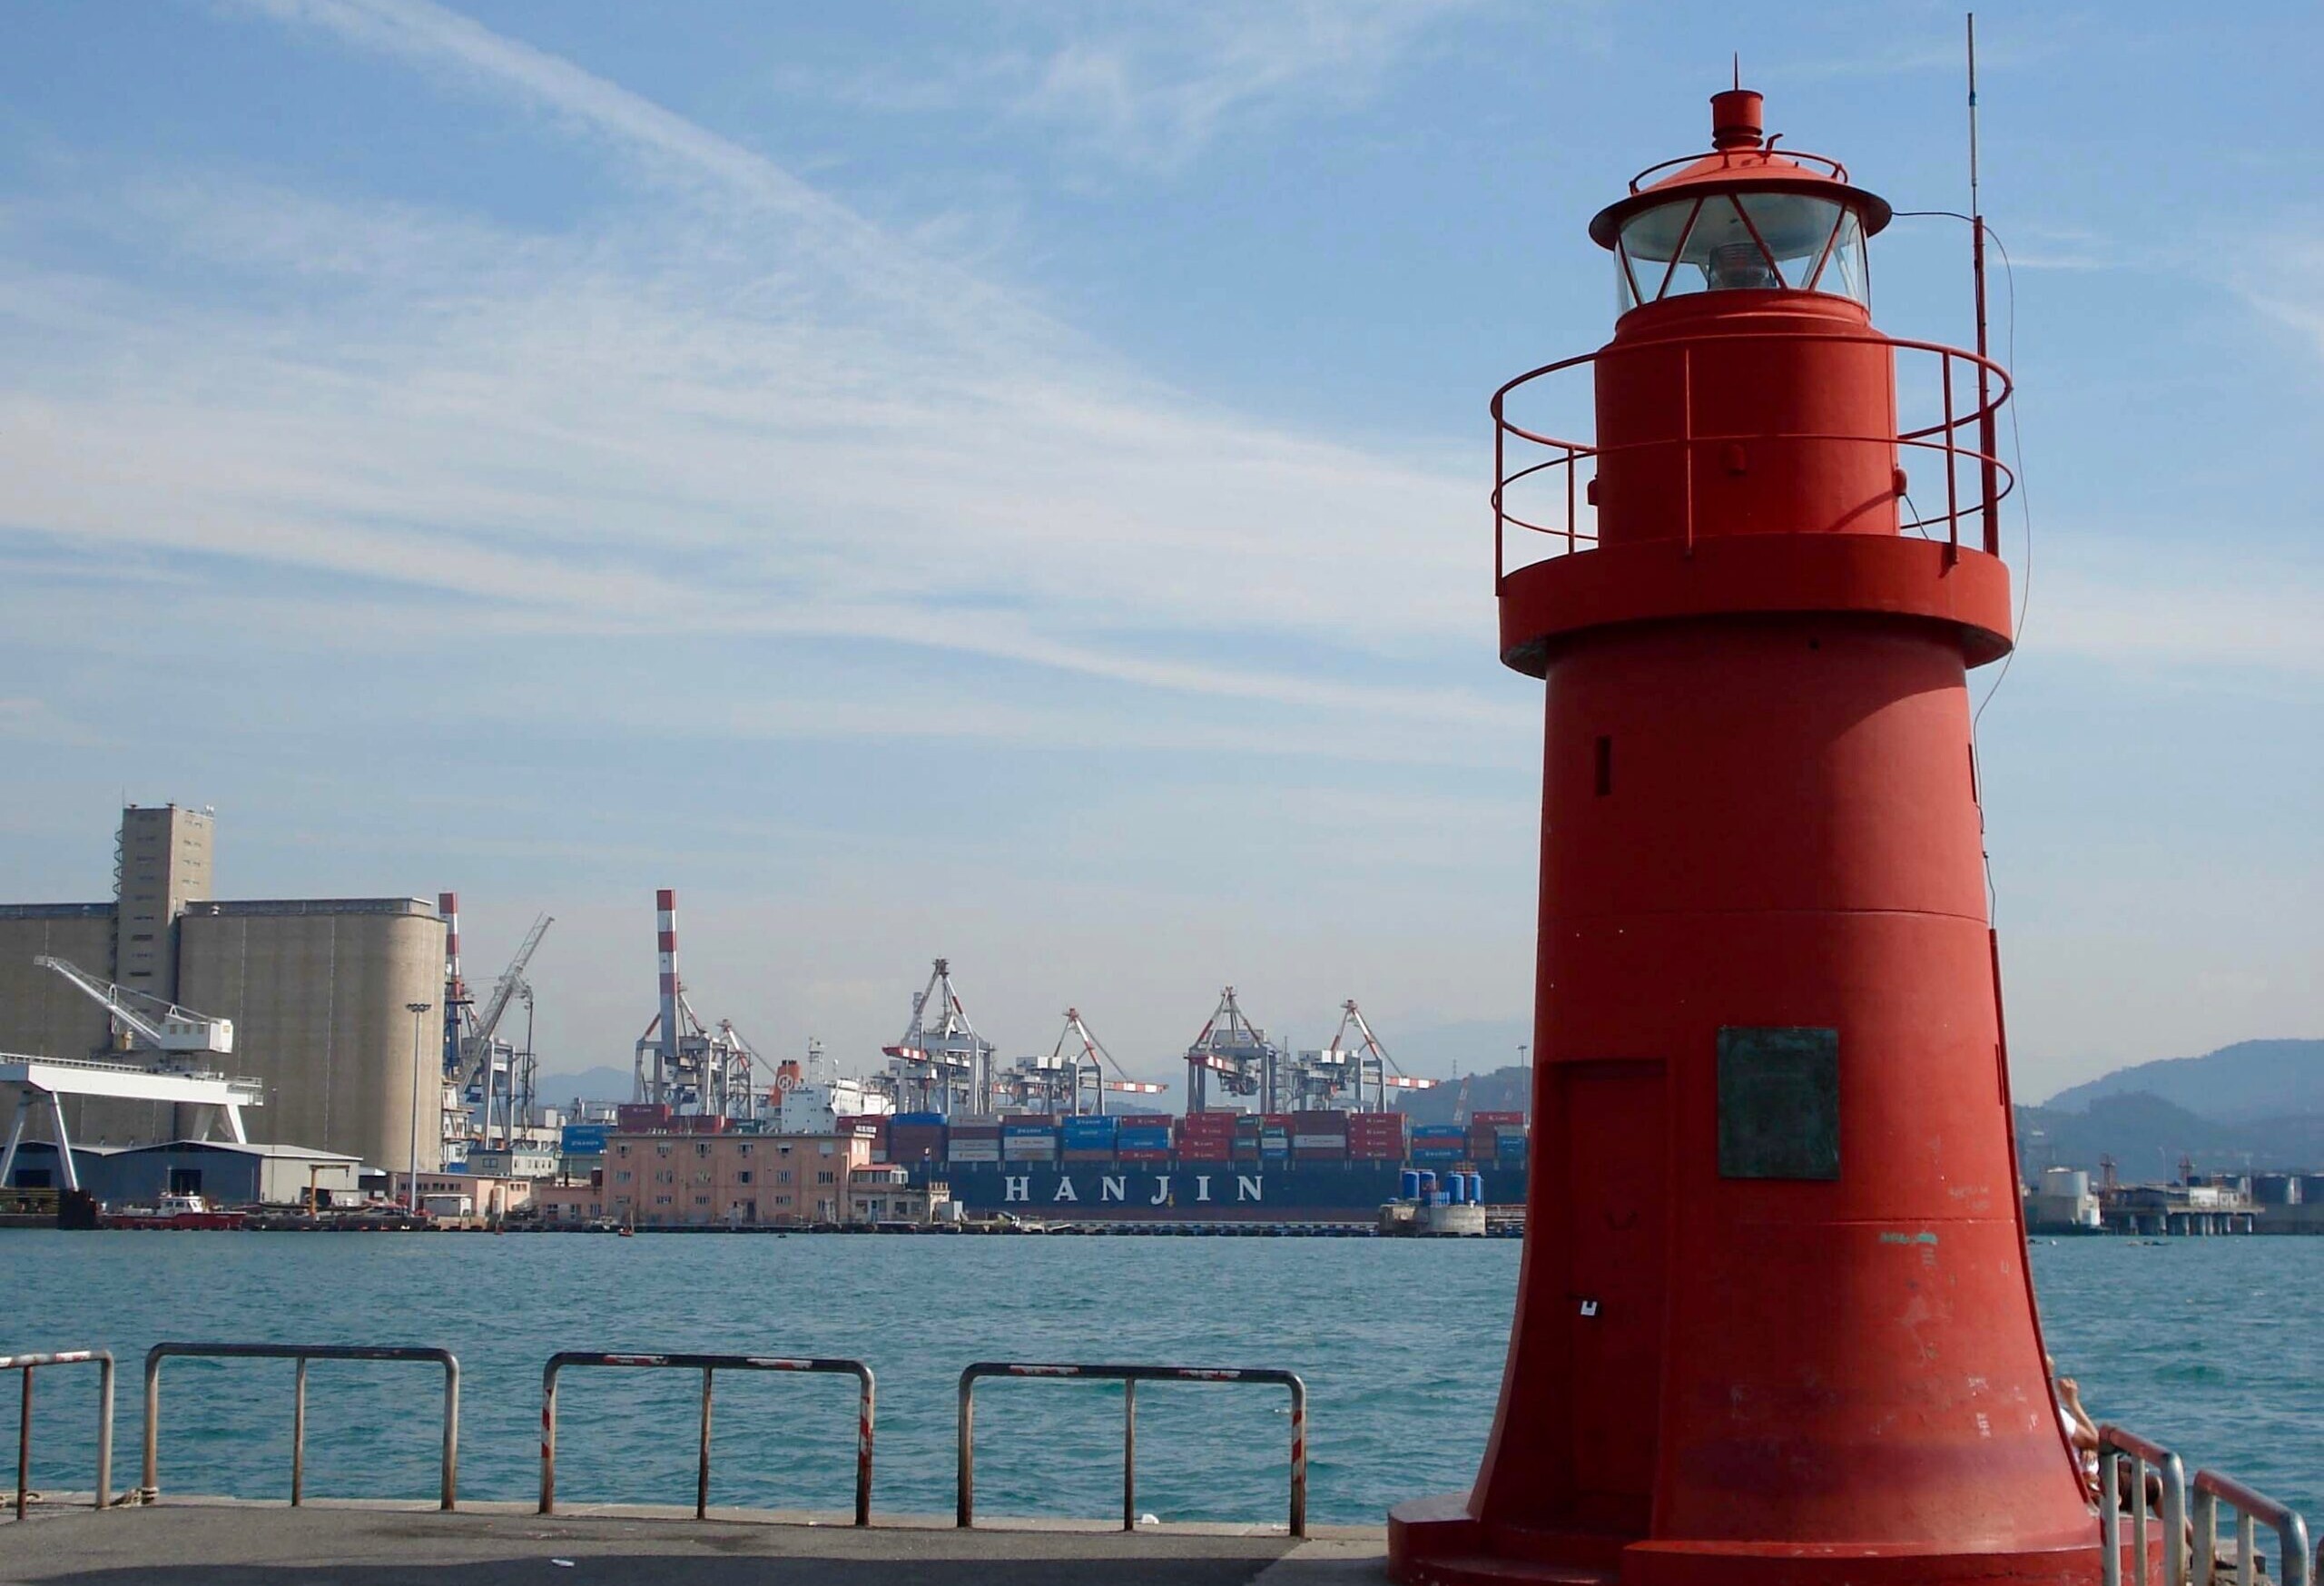 Porto La Spezia: tempi di attesa troppo lunghi per l’autotrasporto, richiesto un confronto